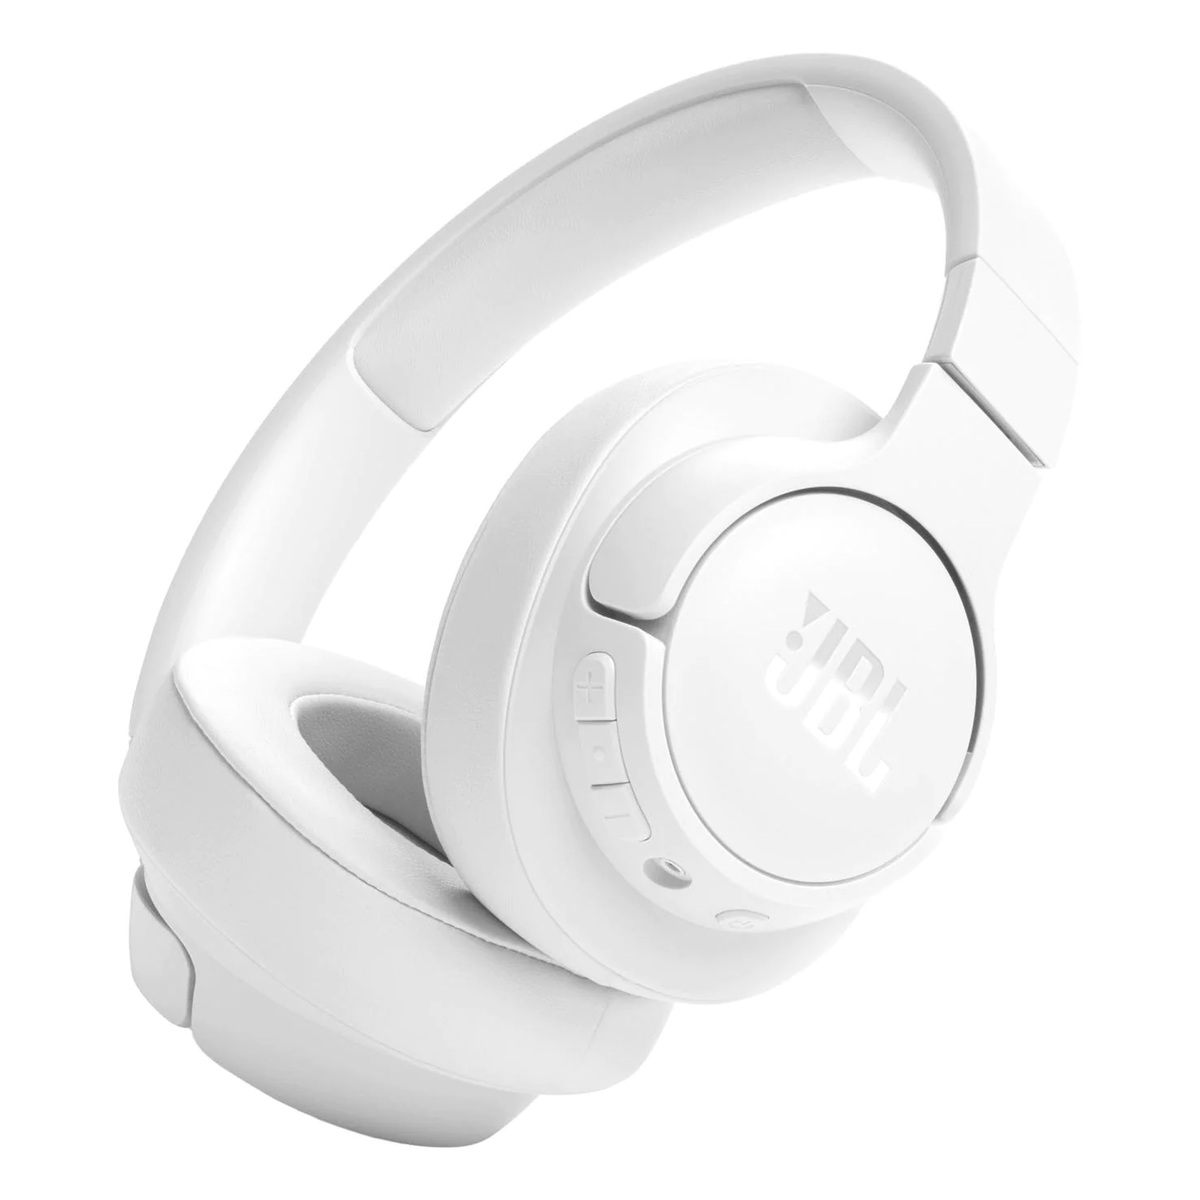 JBL Bluetooth Wireless Headphone, White, JBLT720BTWHT